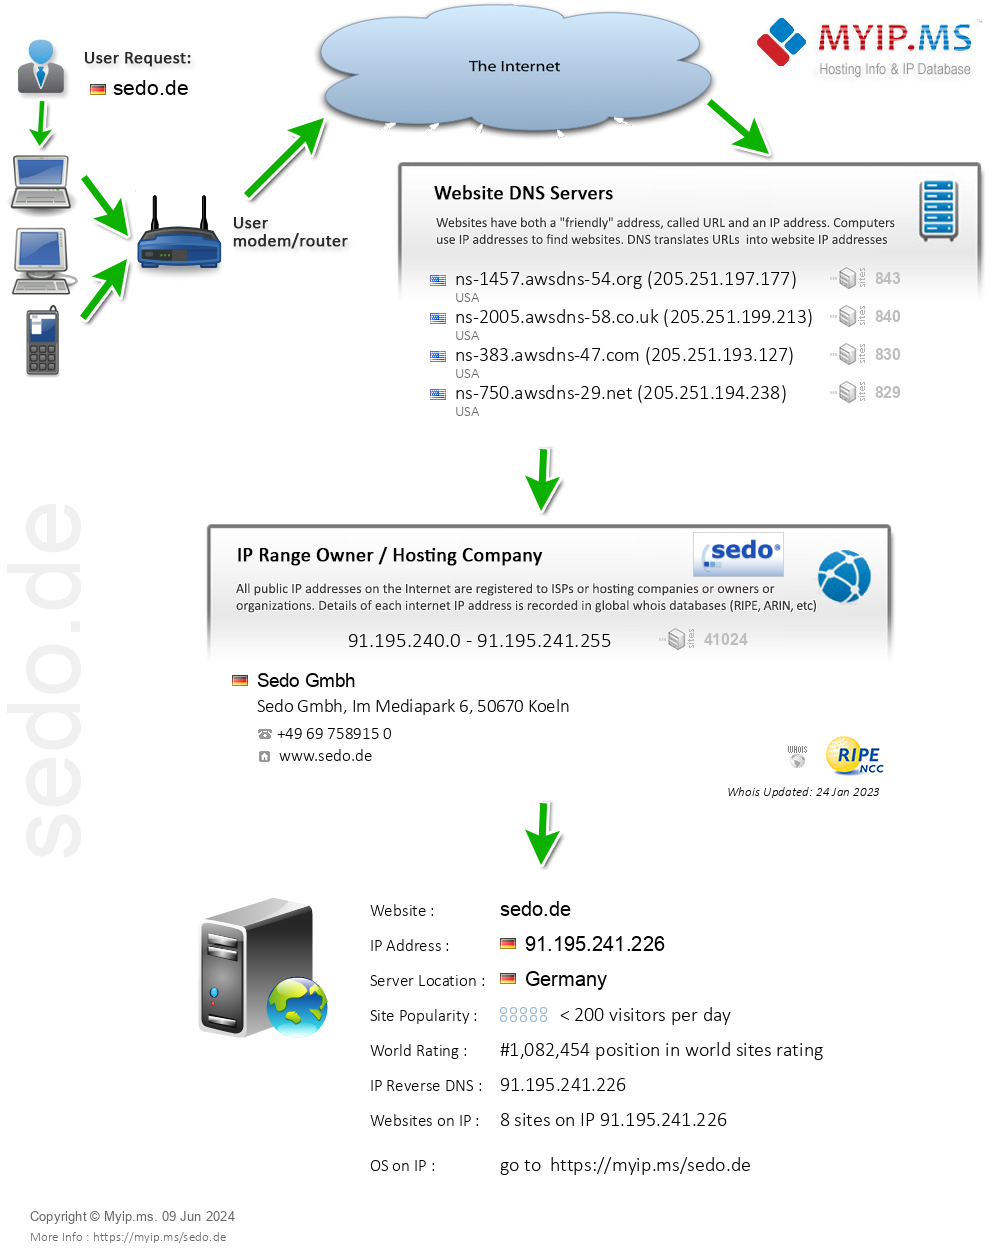 Sedo.de - Website Hosting Visual IP Diagram